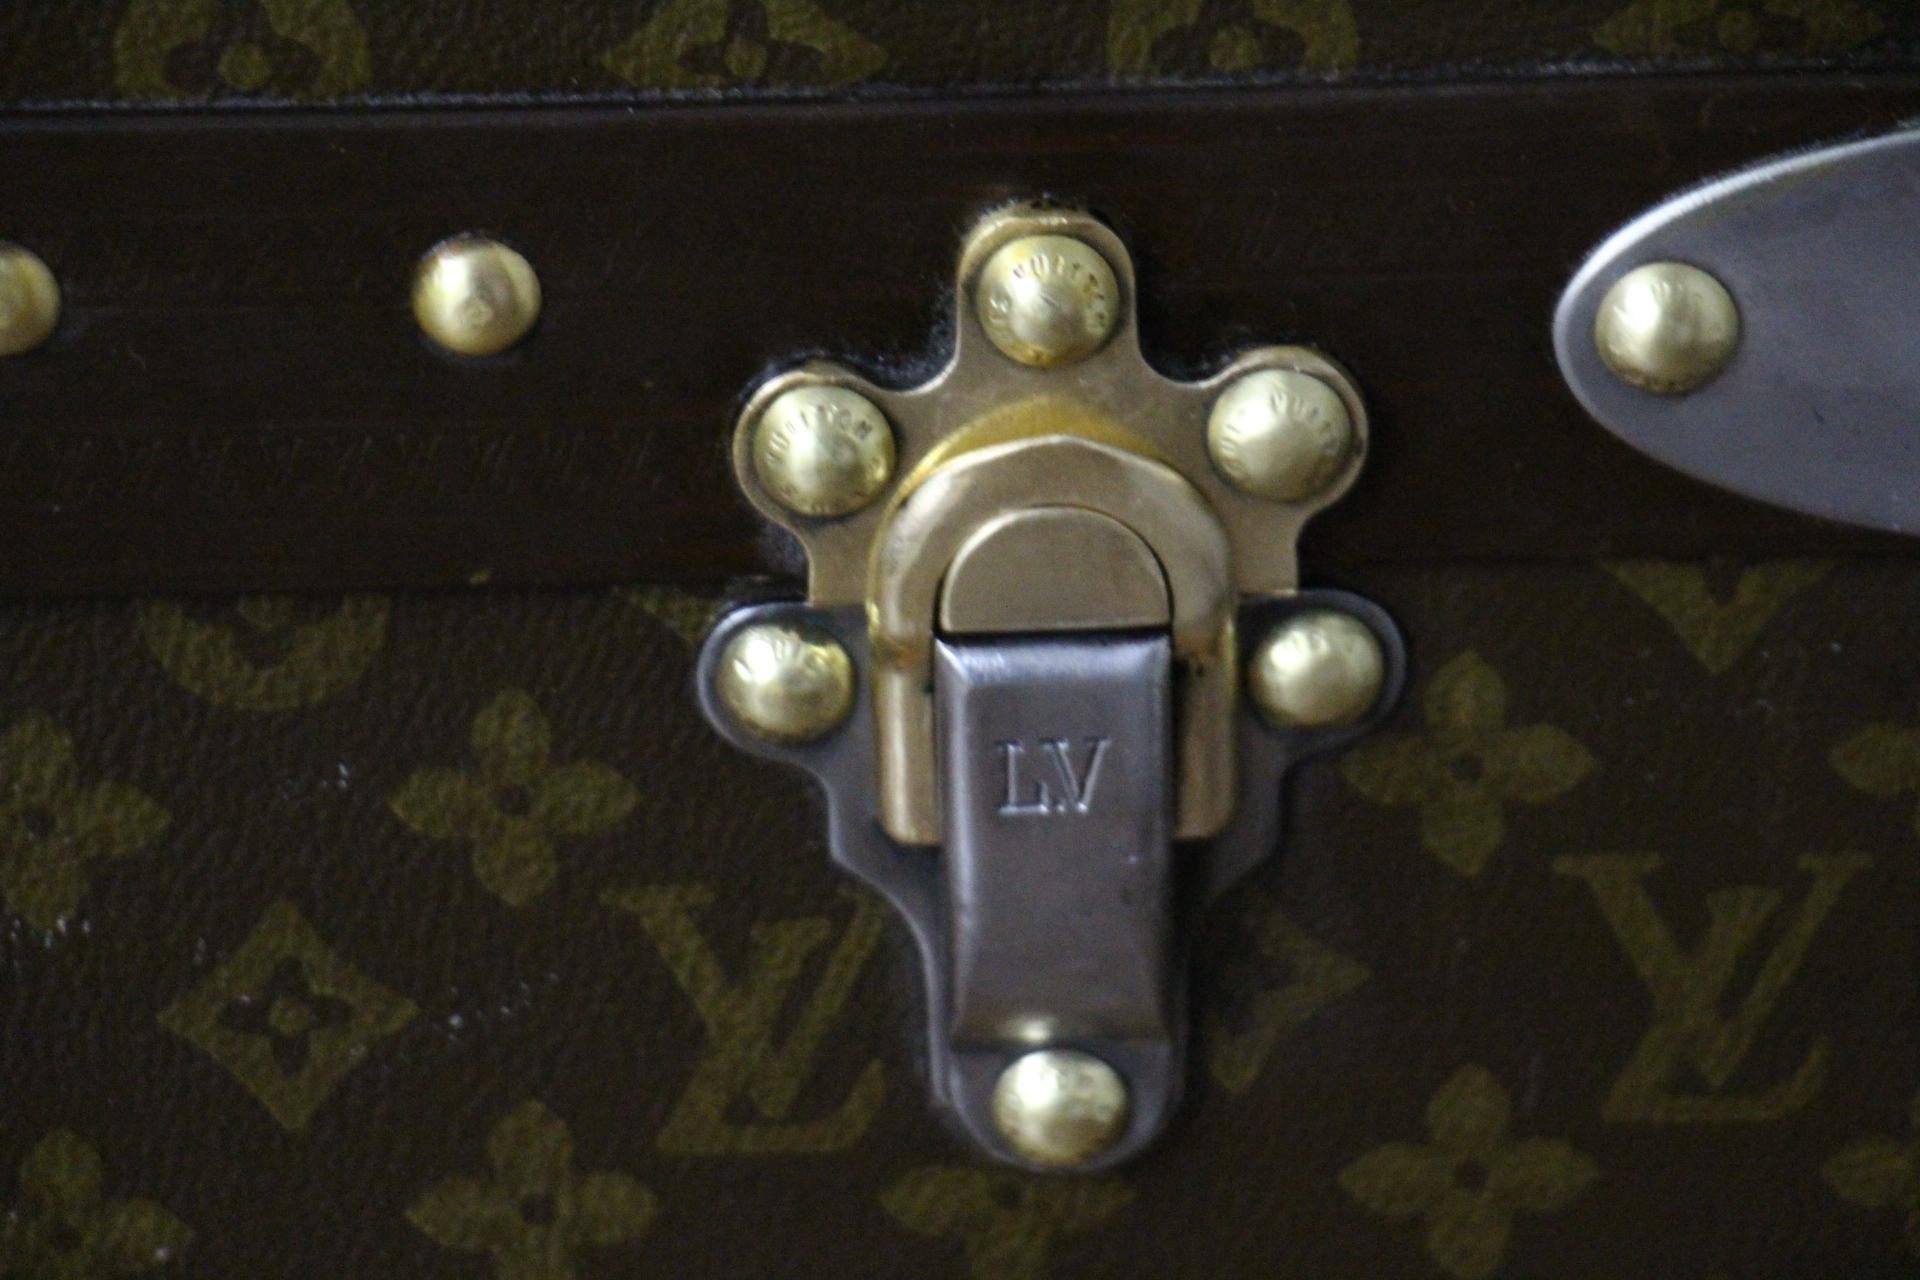 Début du 20ème siècle Malle à vapeur Louis Vuitton des années 1920 avec monogramme poinçonné, 90 cm en vente